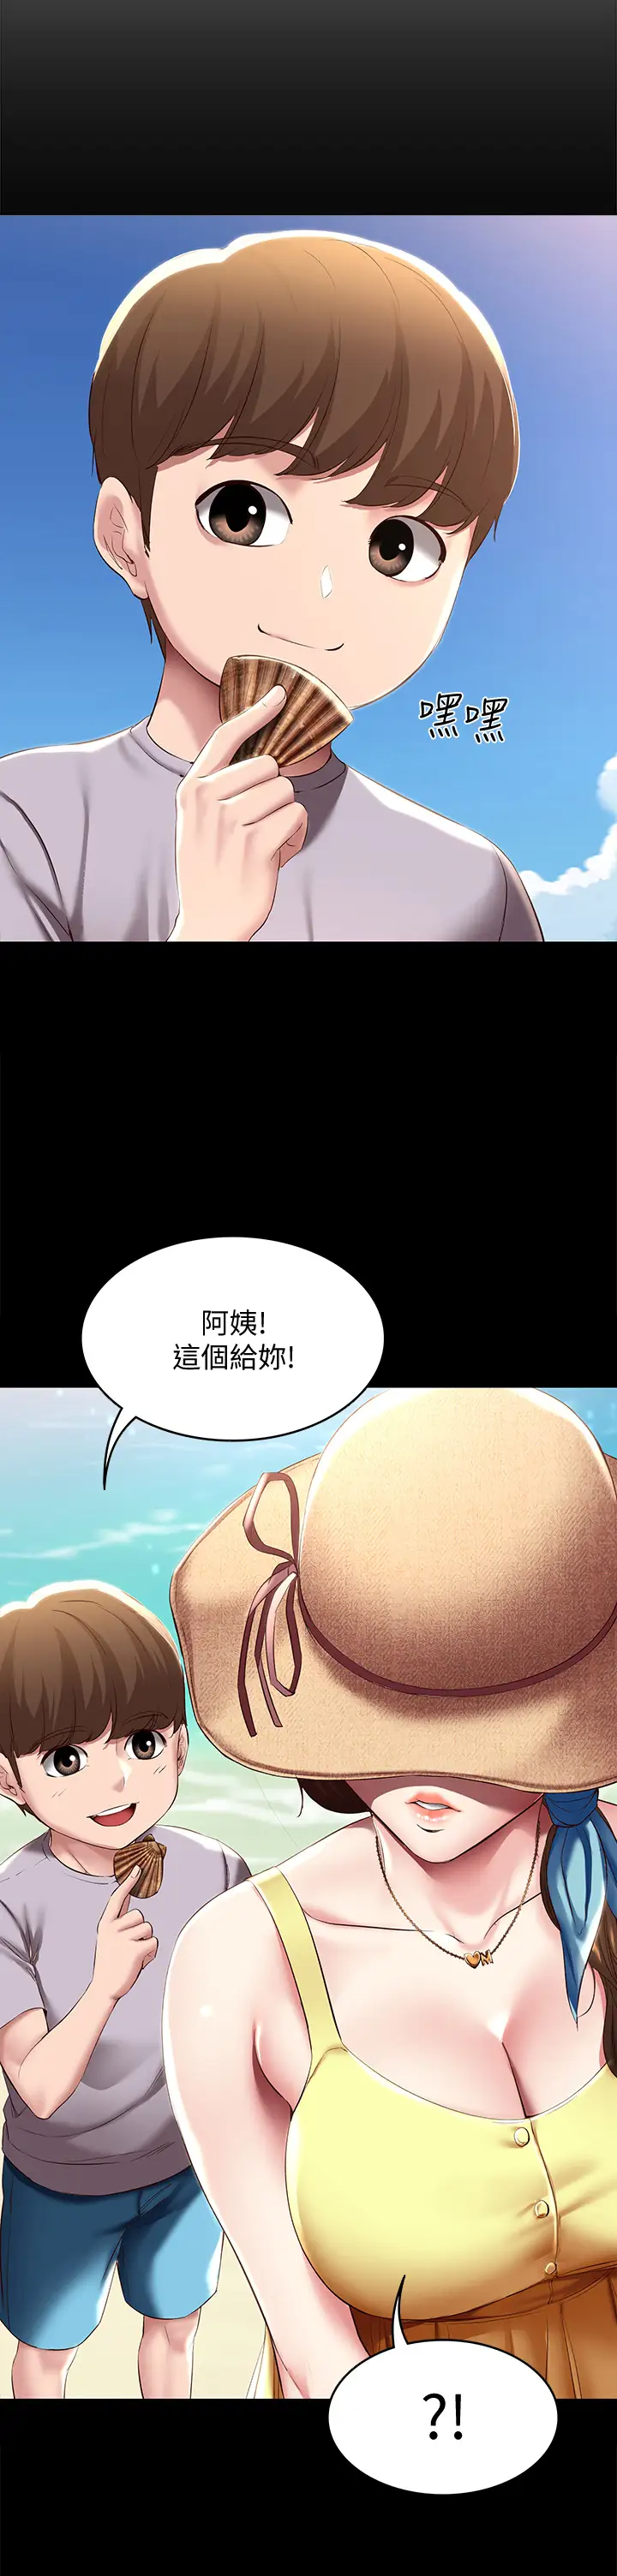 韩国污漫画 寄宿日記 第80话在空无一人的海边求爱 21